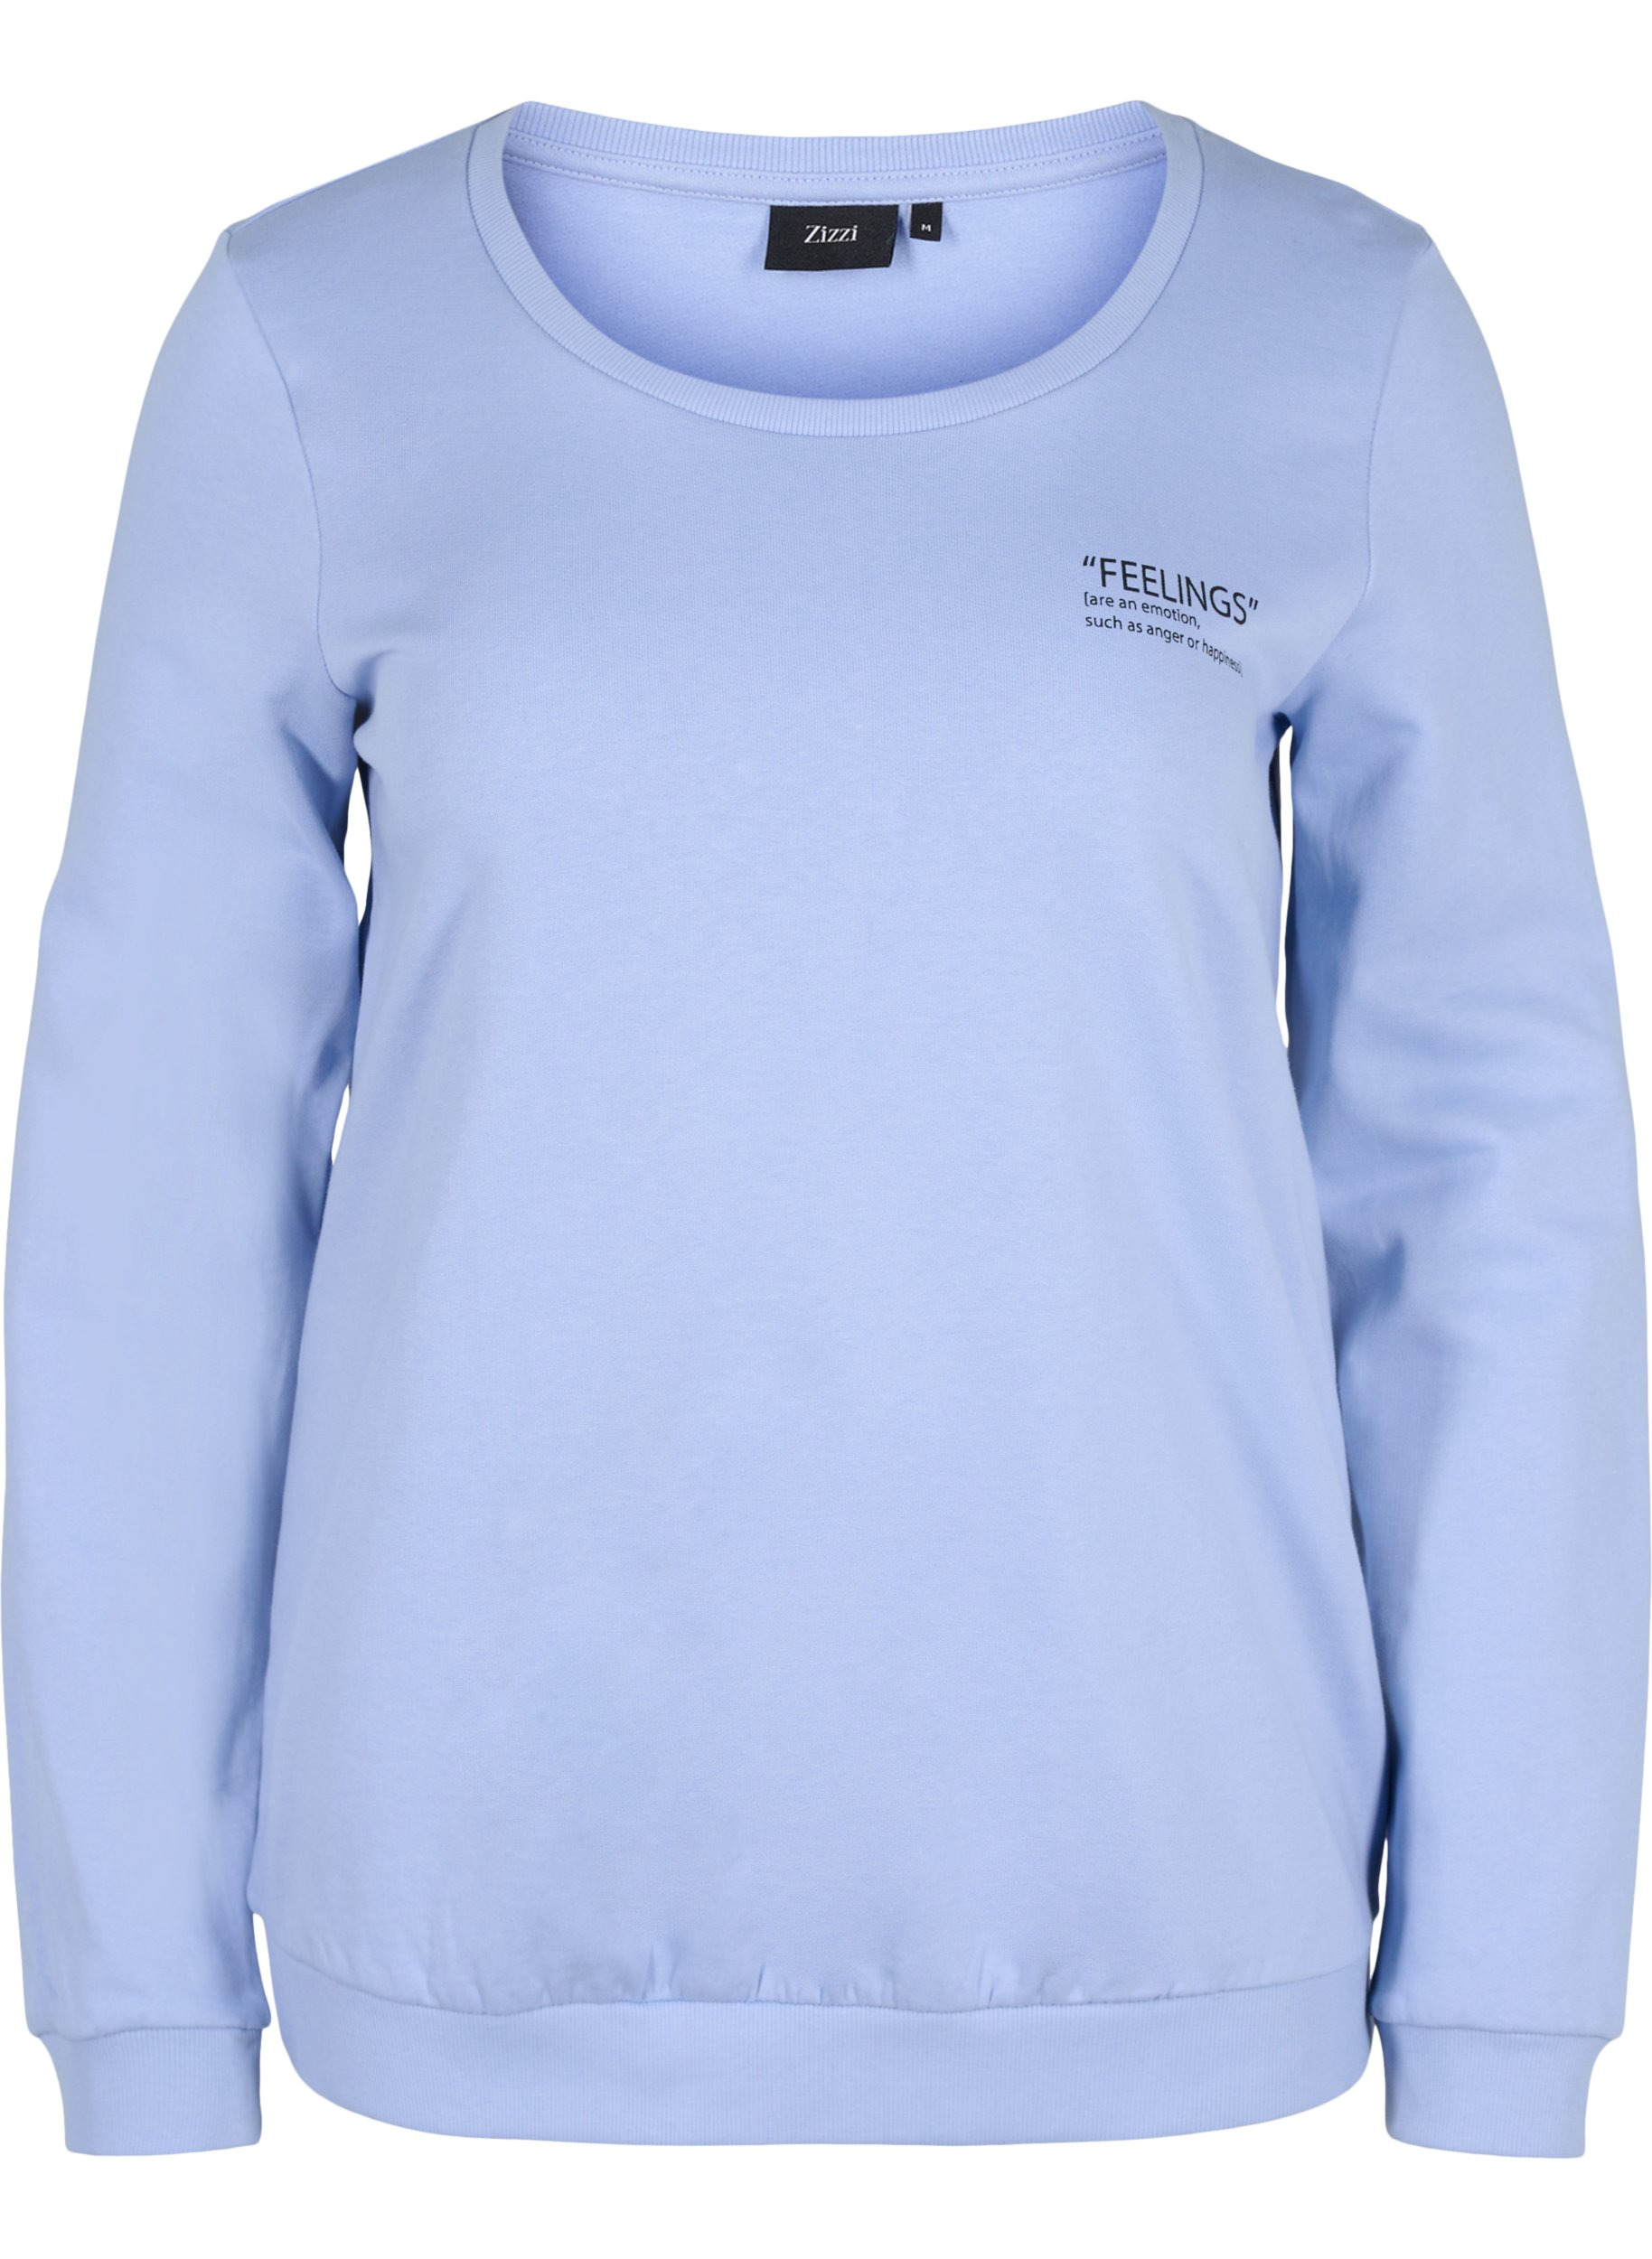 Baumwollsweatshirt mit Textaufdruck, Blue Heron, Packshot